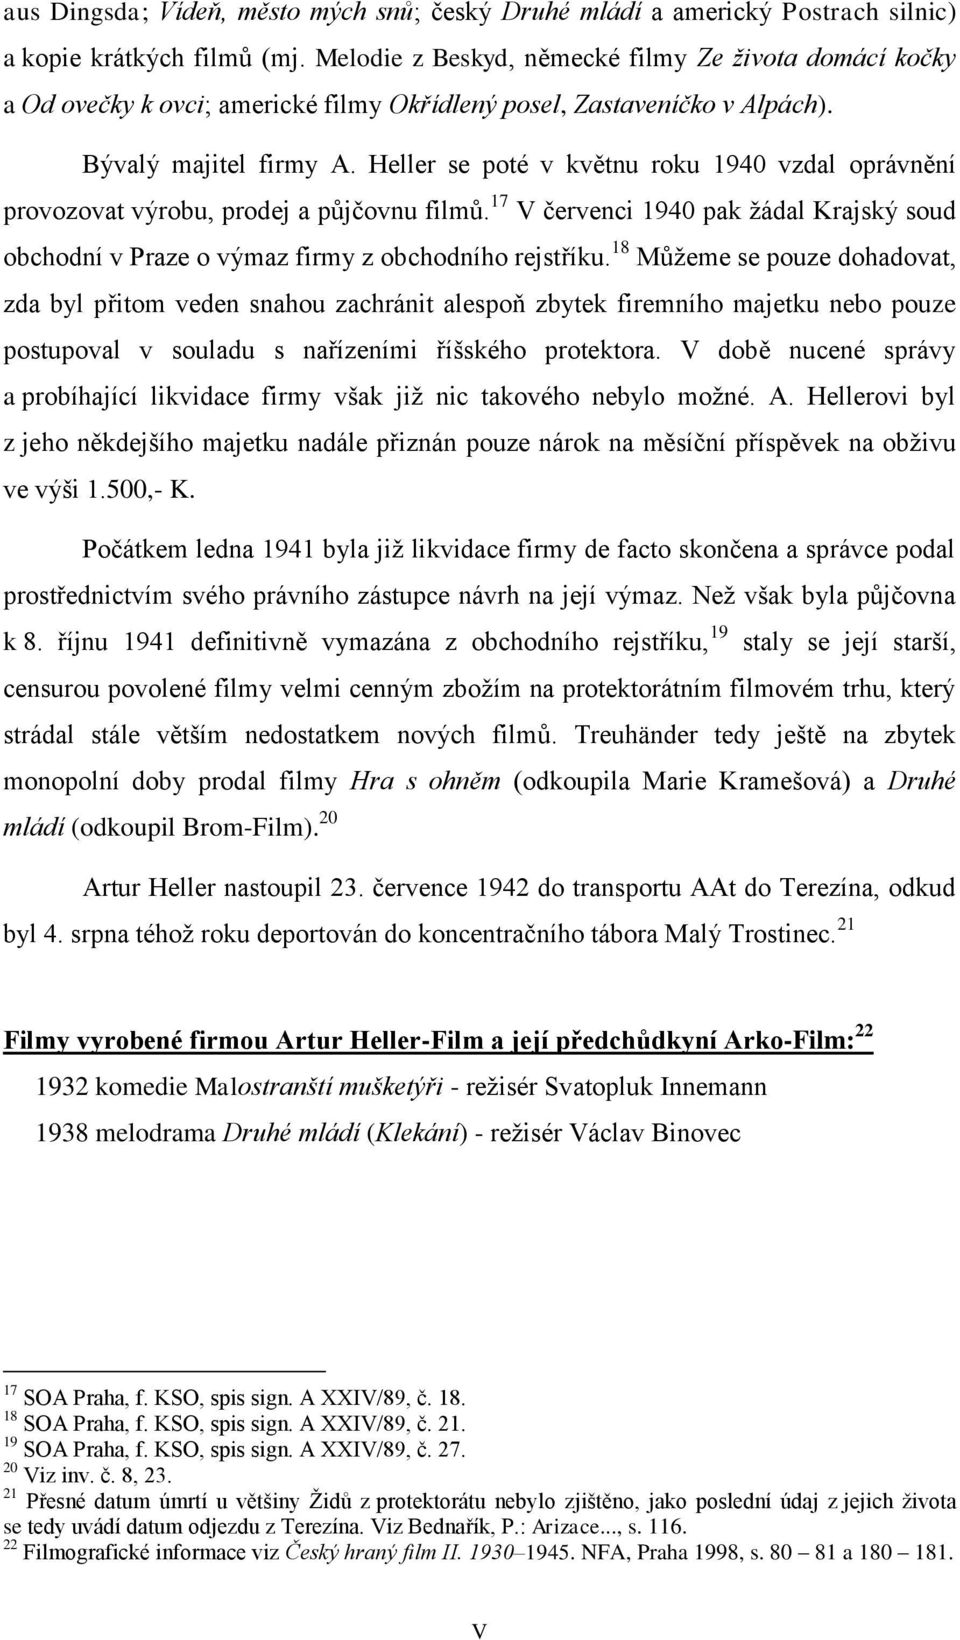 Heller se poté v květnu roku 1940 vzdal oprávnění provozovat výrobu, prodej a půjčovnu filmů. 17 V červenci 1940 pak žádal Krajský soud obchodní v Praze o výmaz firmy z obchodního rejstříku.